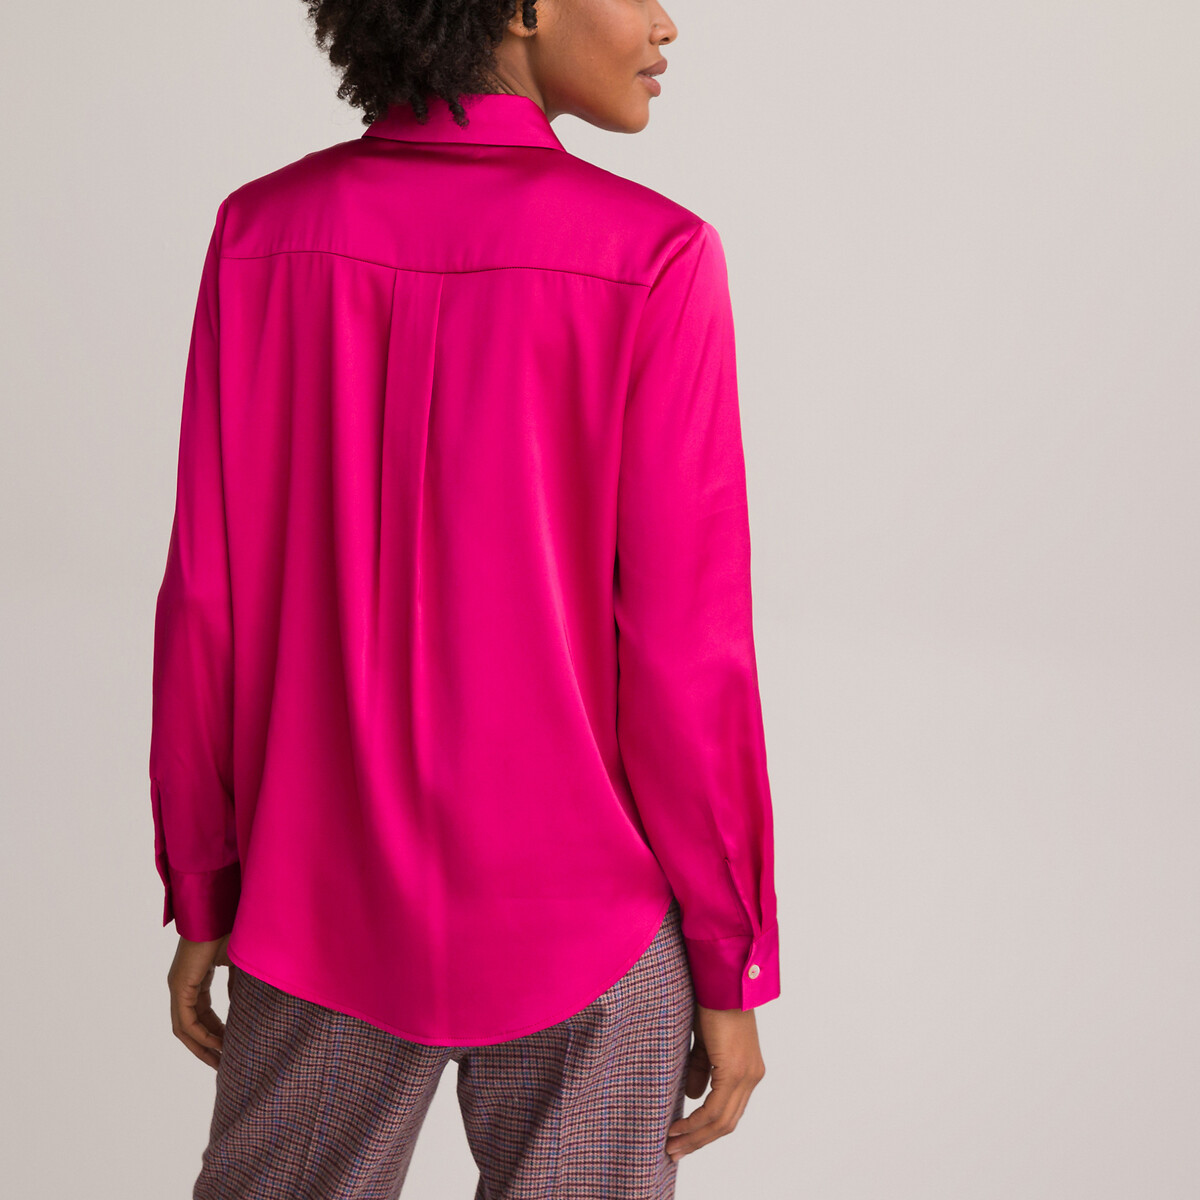 Рубашка С длинными рукавами атласная 50 (FR) - 56 (RUS) розовый LaRedoute, размер 50 (FR) - 56 (RUS) Рубашка С длинными рукавами атласная 50 (FR) - 56 (RUS) розовый - фото 4